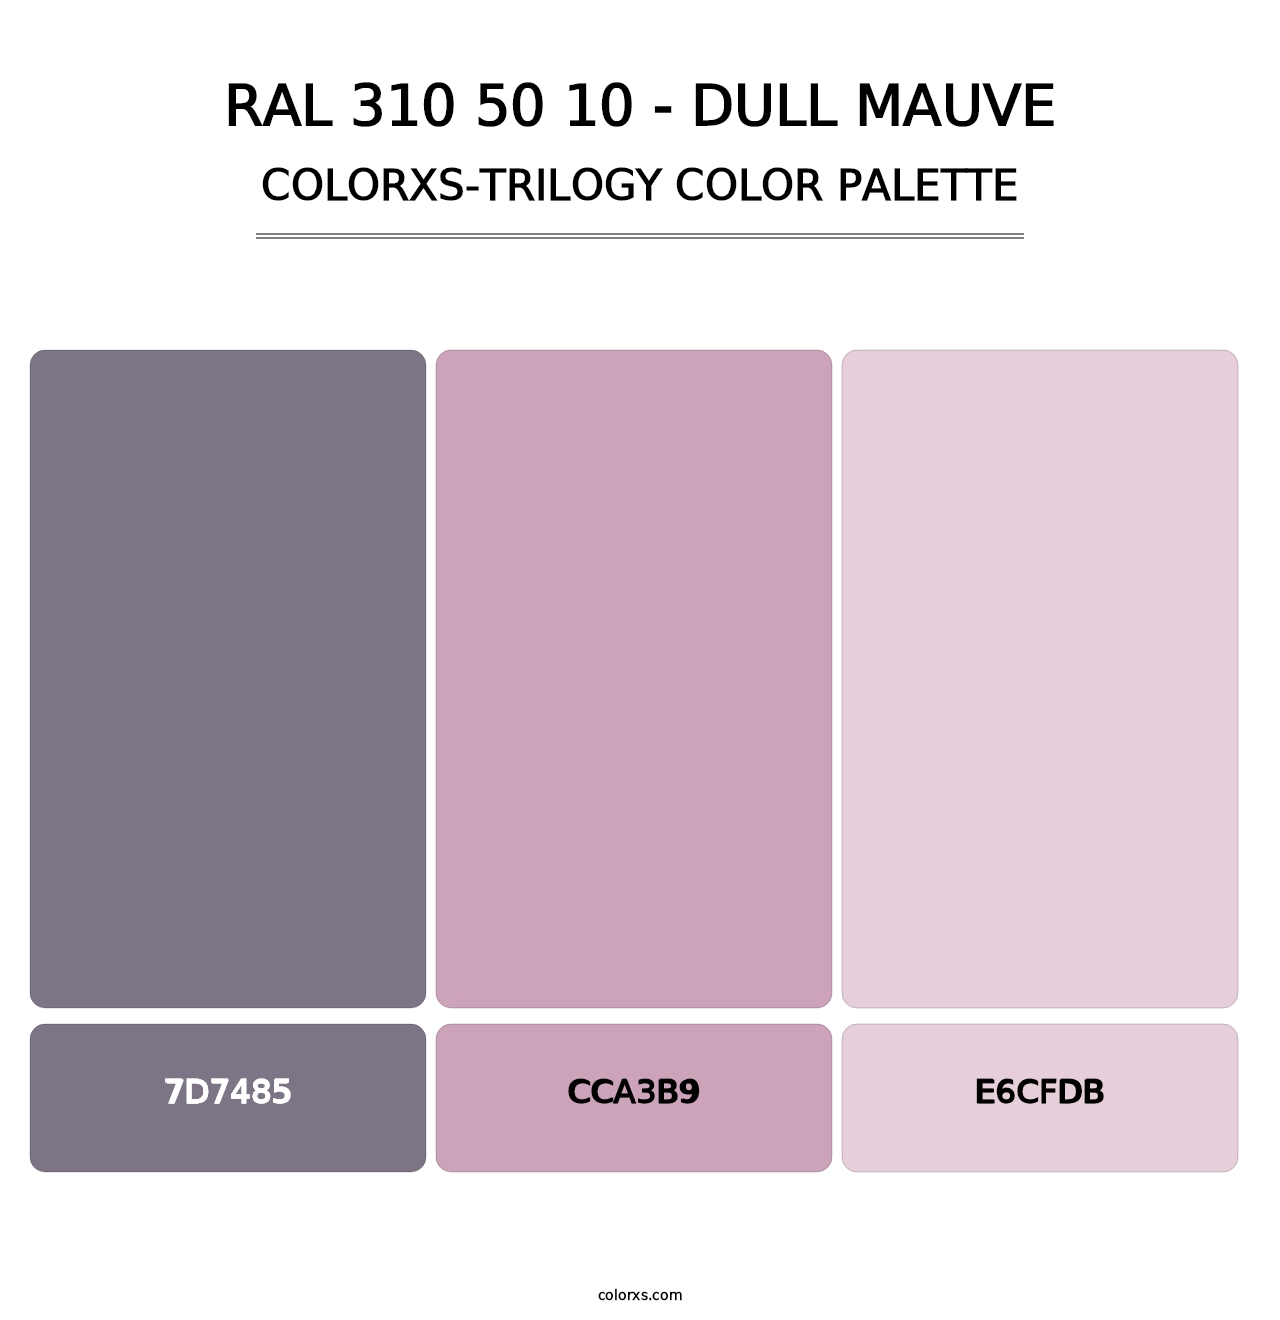 RAL 310 50 10 - Dull Mauve - Colorxs Trilogy Palette